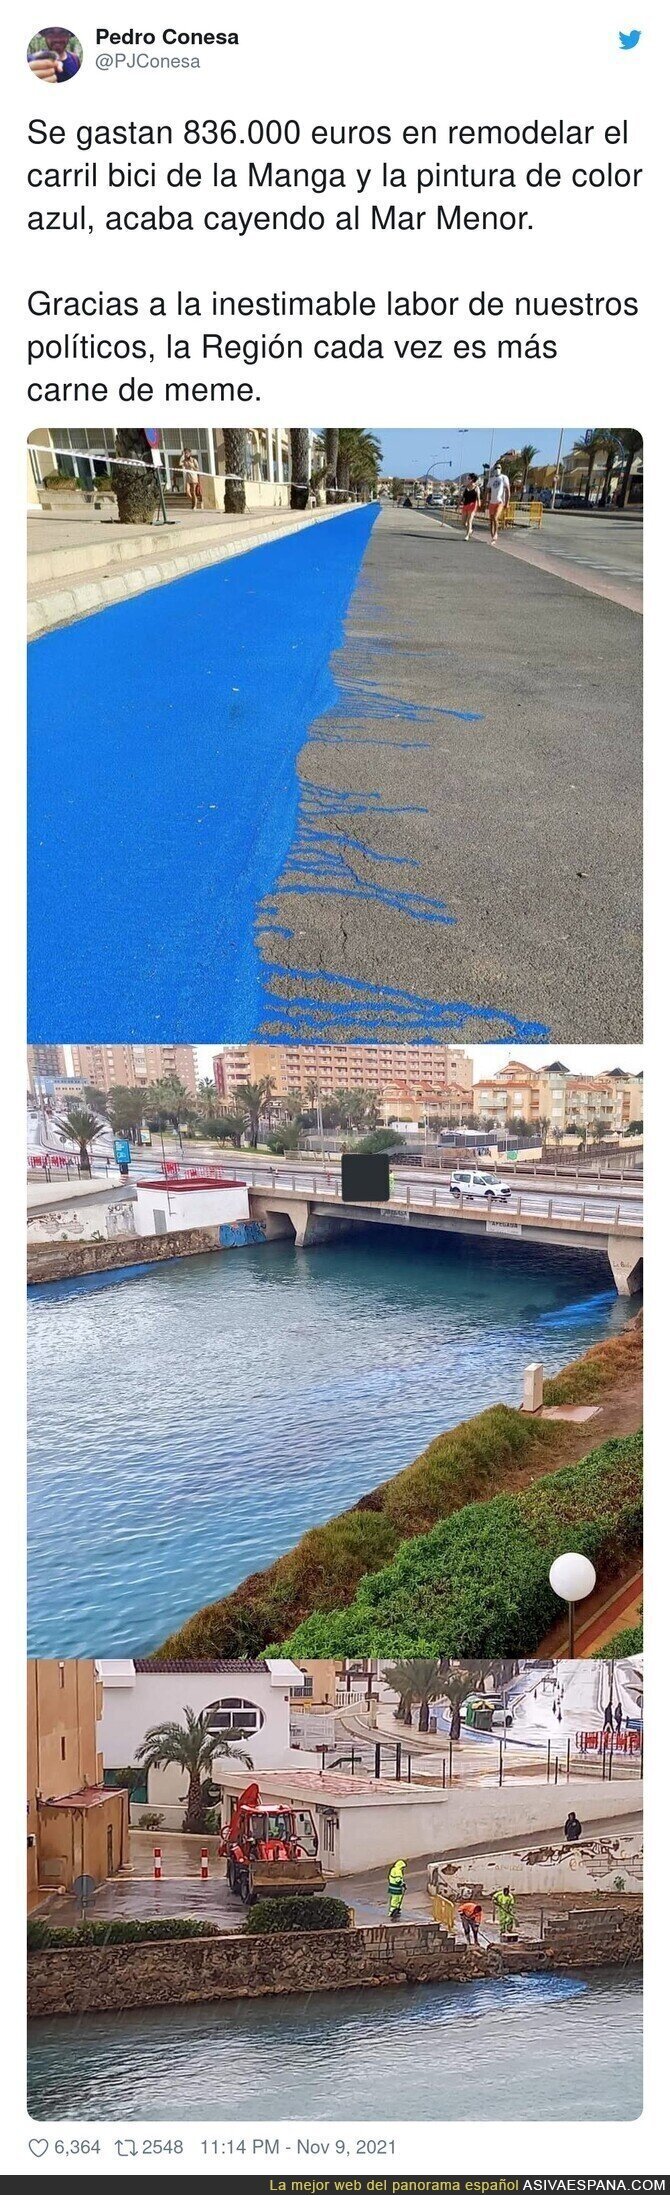 Murcia es el hazmerreír del Mundo por desastres ecológicos como este en el Mar Menor